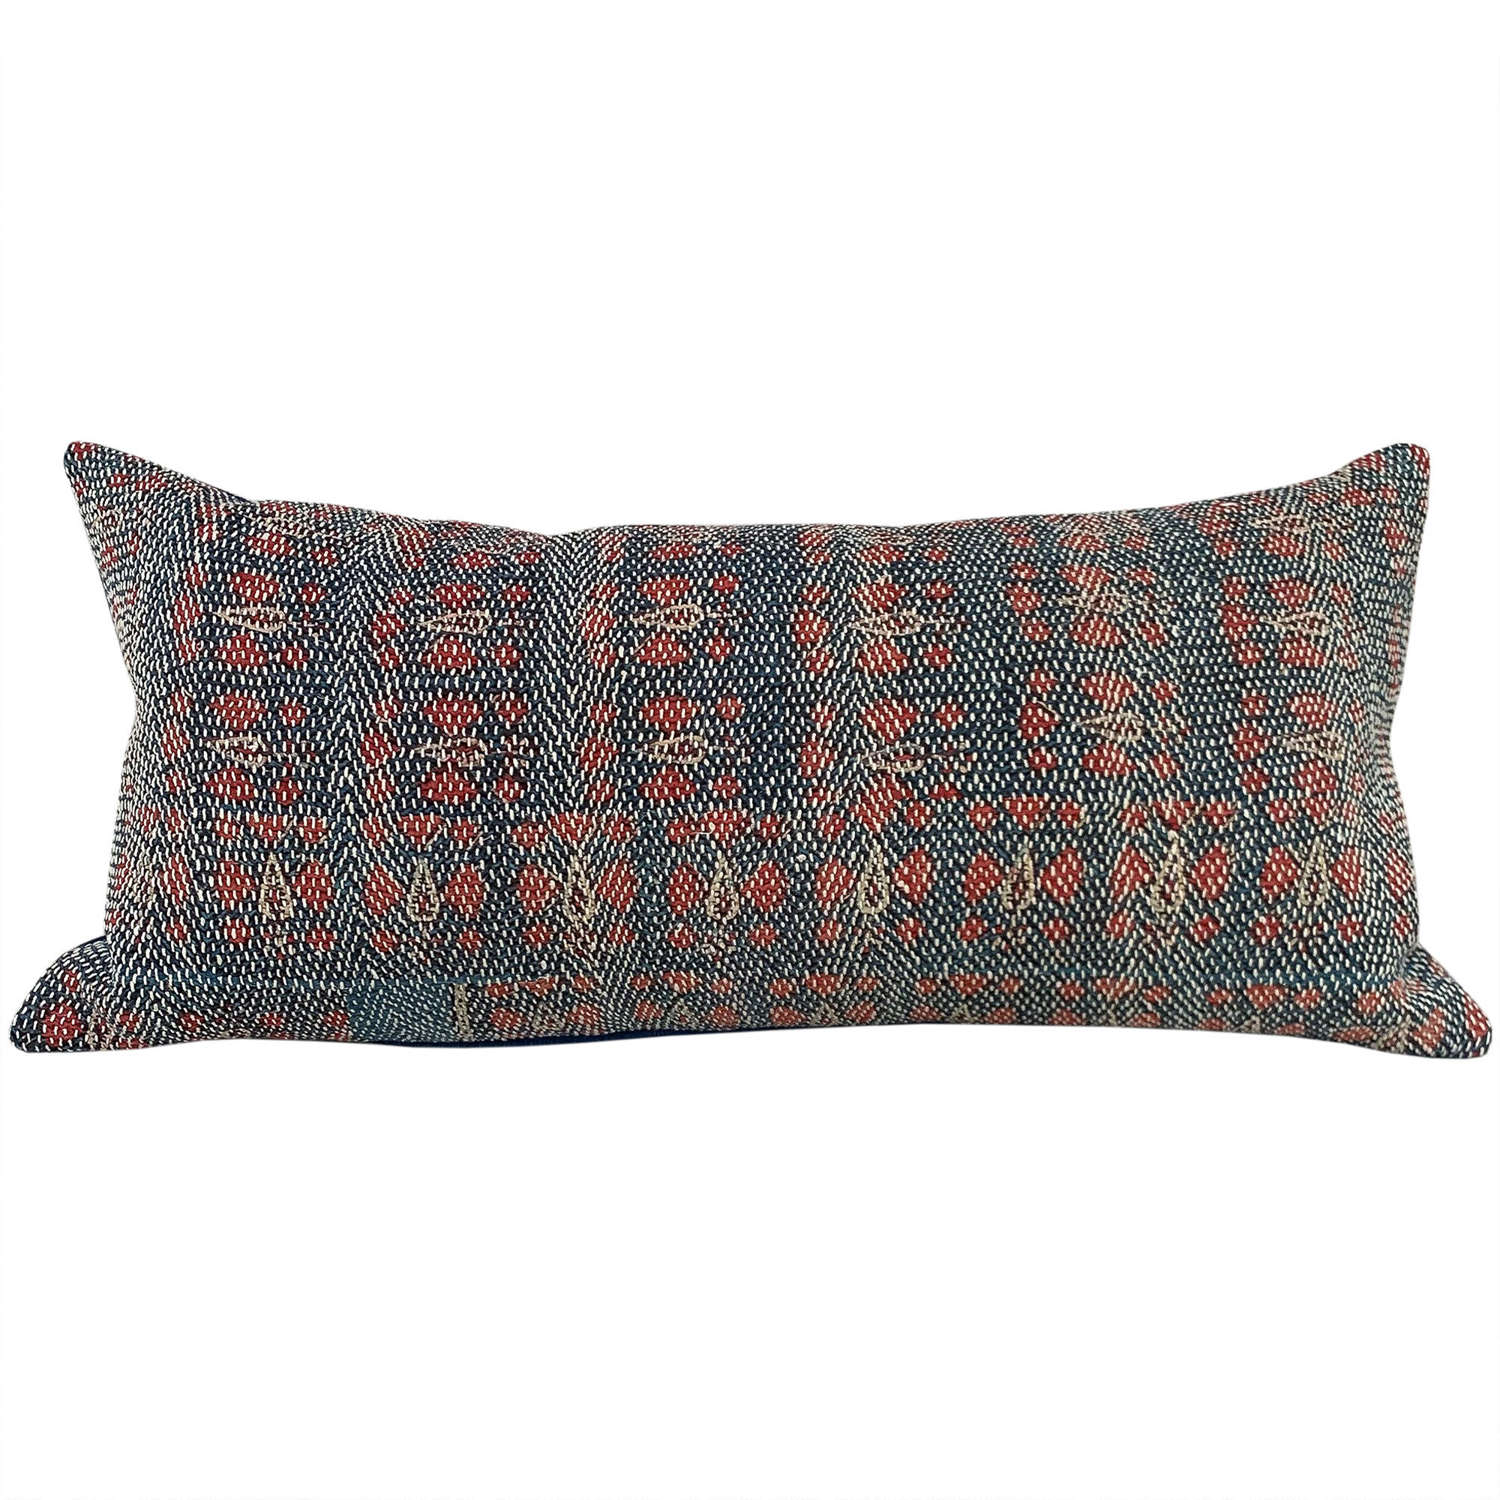 Large Banjara cushion